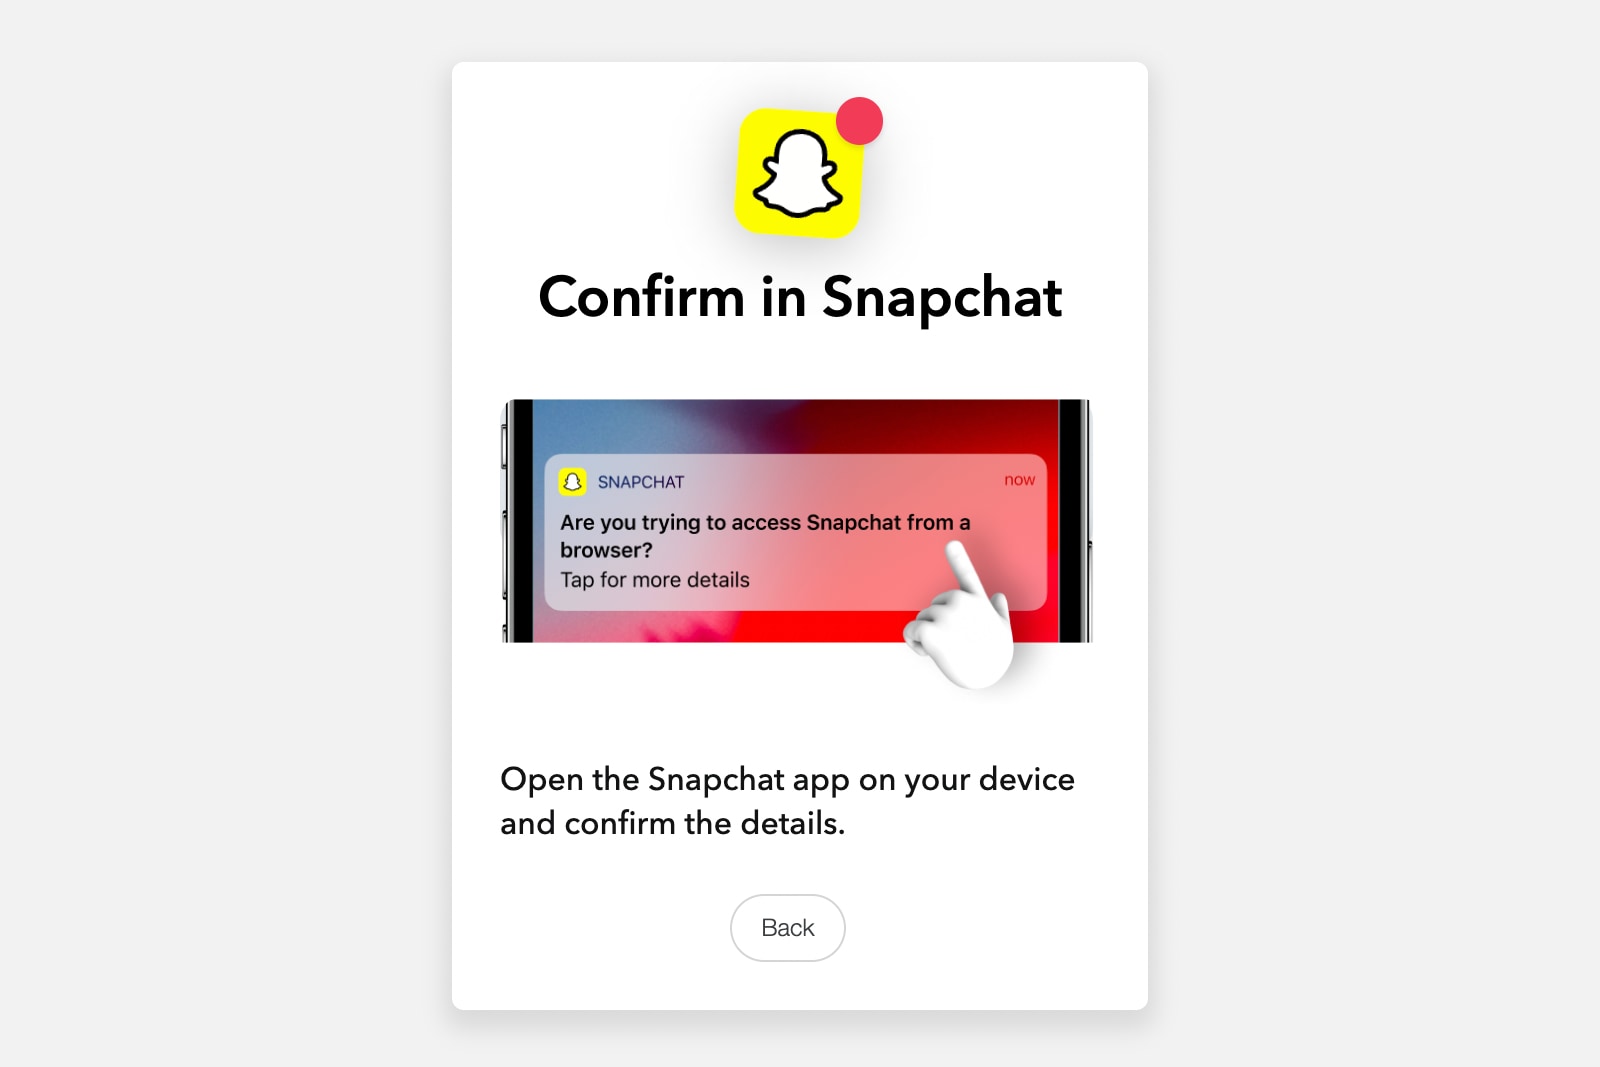 Uma mensagem pode aparecer no navegador do computador pedindo confirmação no aplicativo móvel do Snapchat.